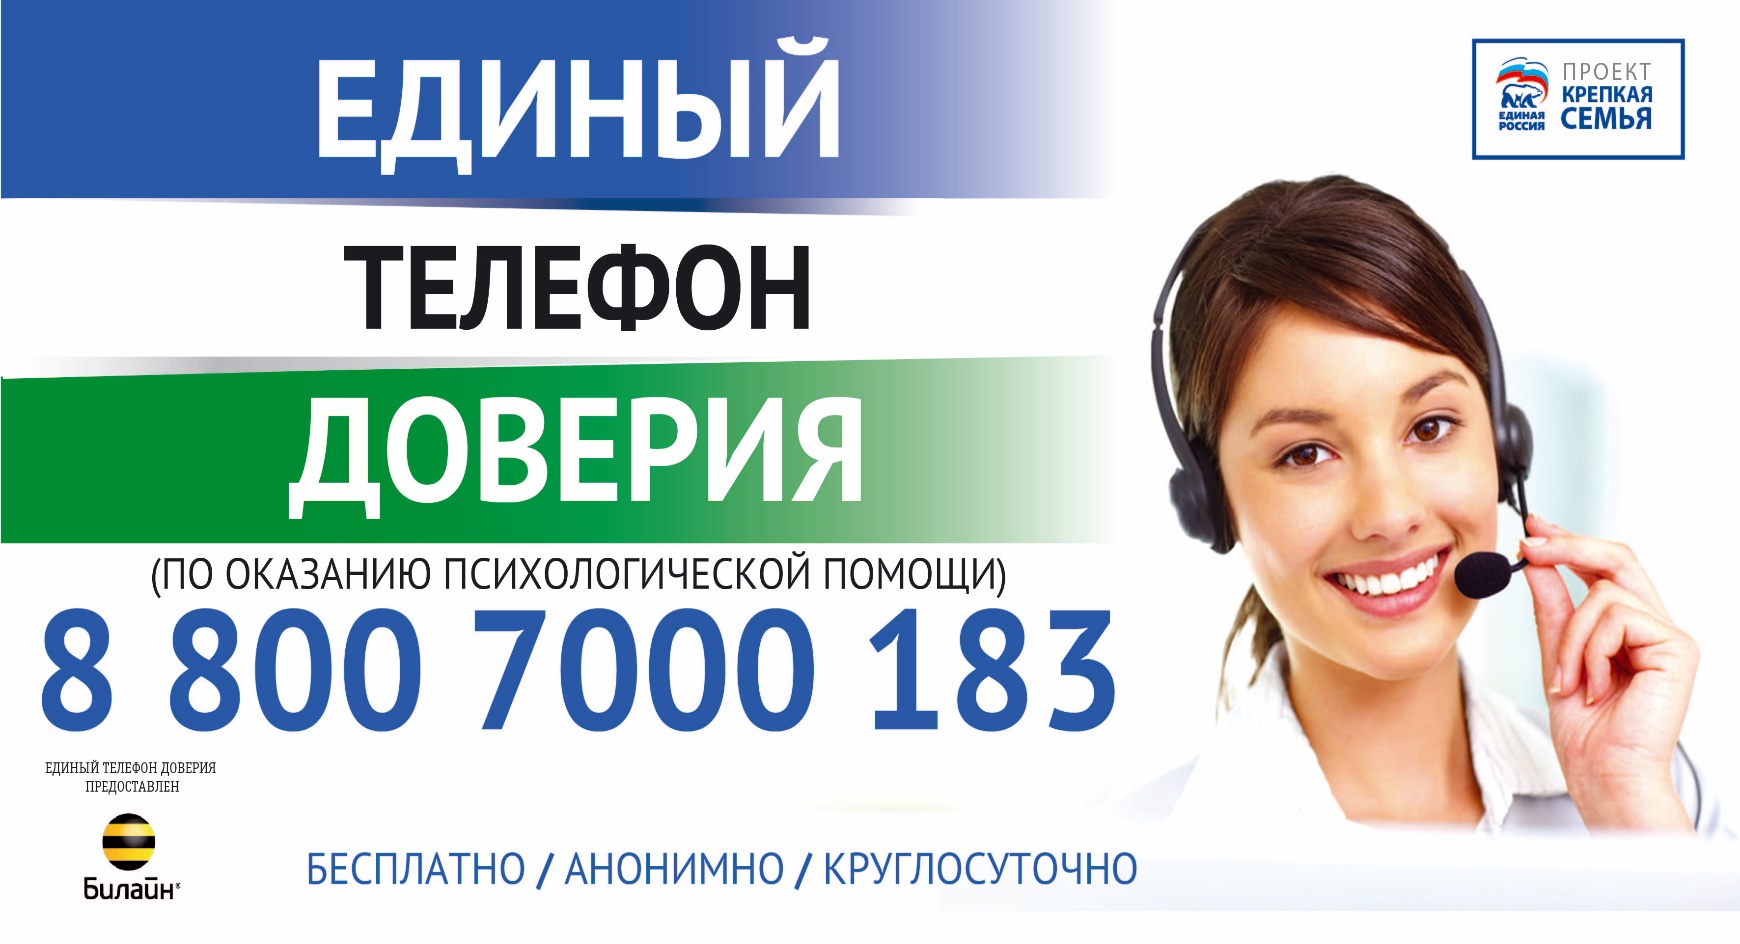 Телефон круглосуточной службы россия. Телефон доверия. Бесплатный телефон доверия. Телефон психологической помощи.